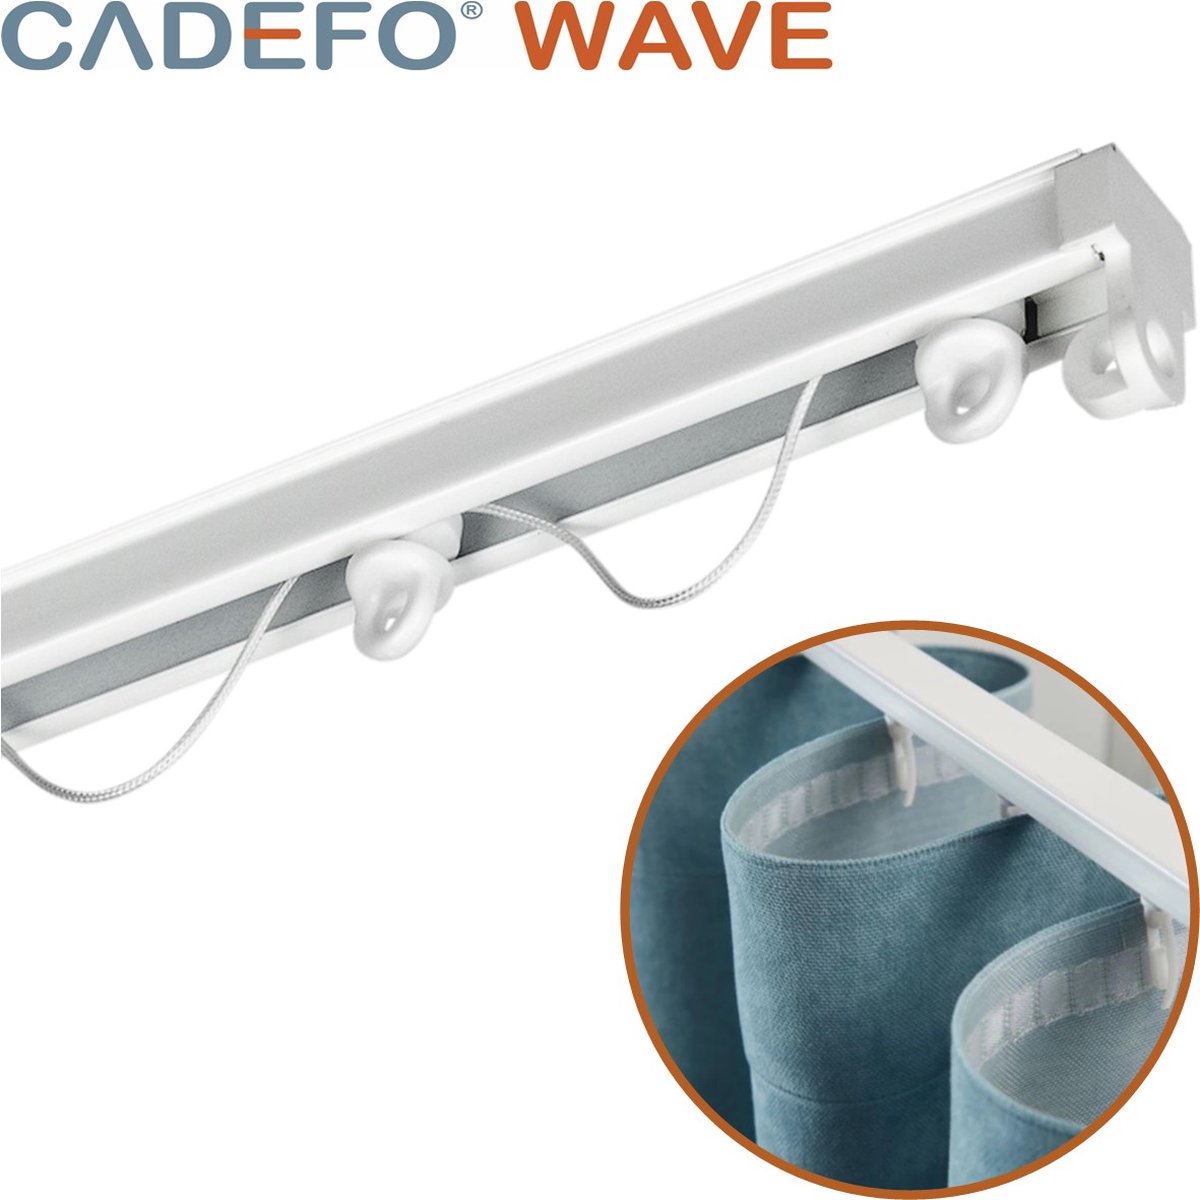 CADEFO WAVE (501 - 550 cm) Gordijnrails - Compleet op maat! - UIT 1 STUK - Leverbaar tot 6 meter - Plafondbevestiging - Lengte 519 cm